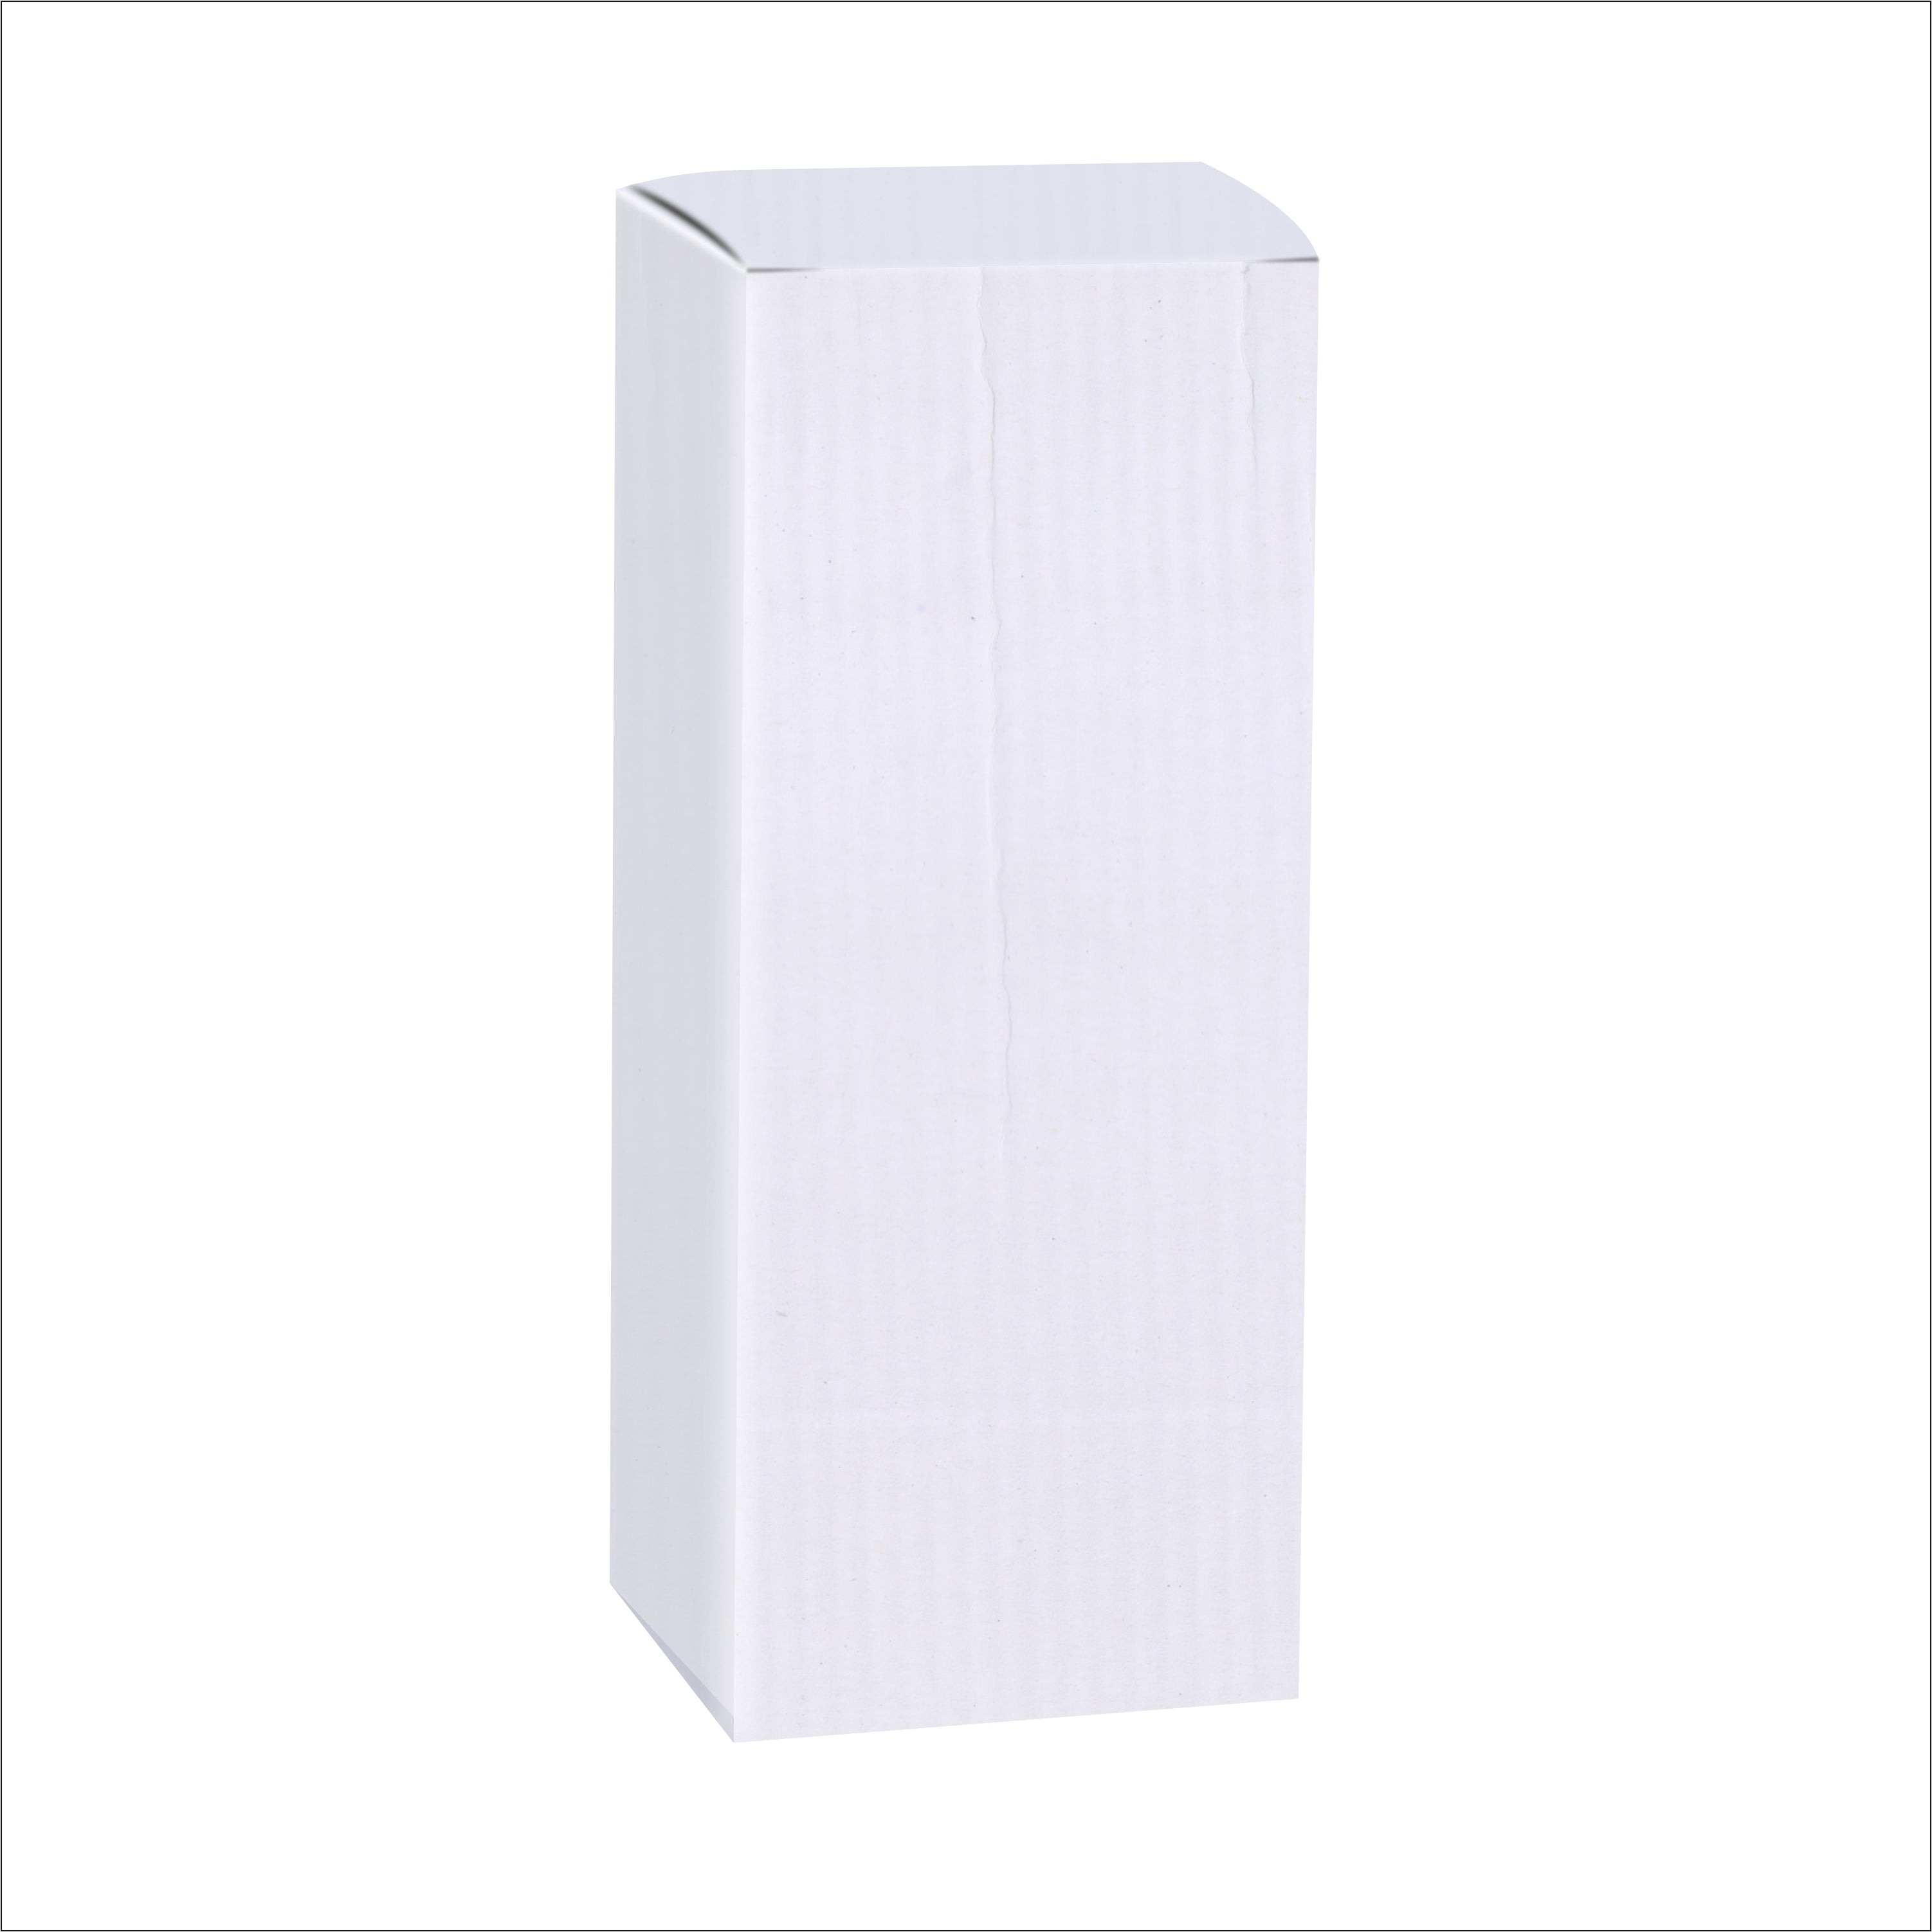 Zenvista Premium White Corrugated Box |9 x 4 x 4.5 cm | Pack of 20